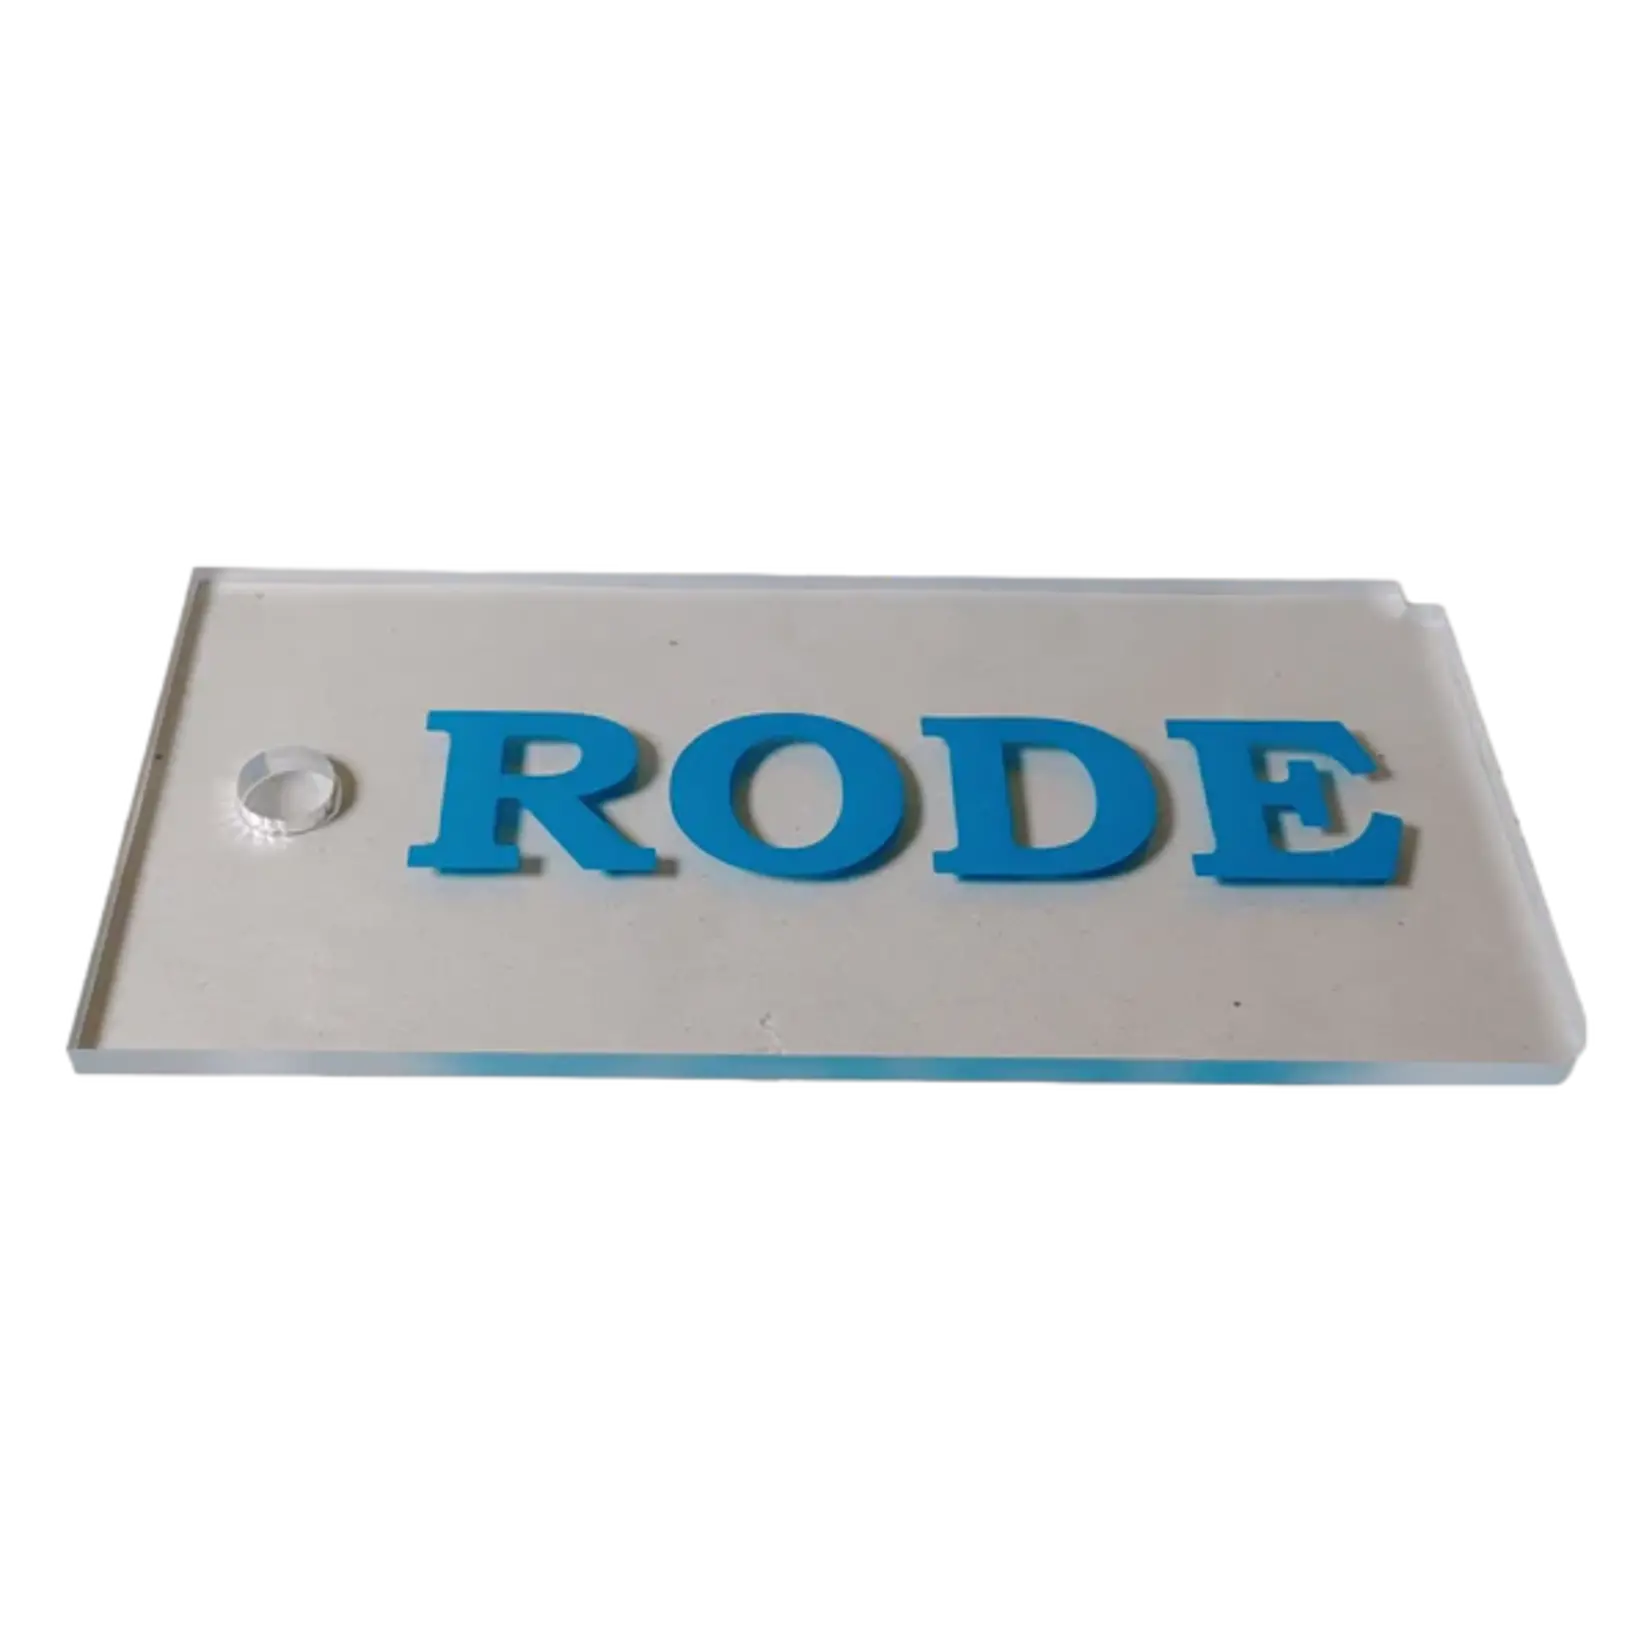 RODE Rode Plexiglass Scraper 3mm